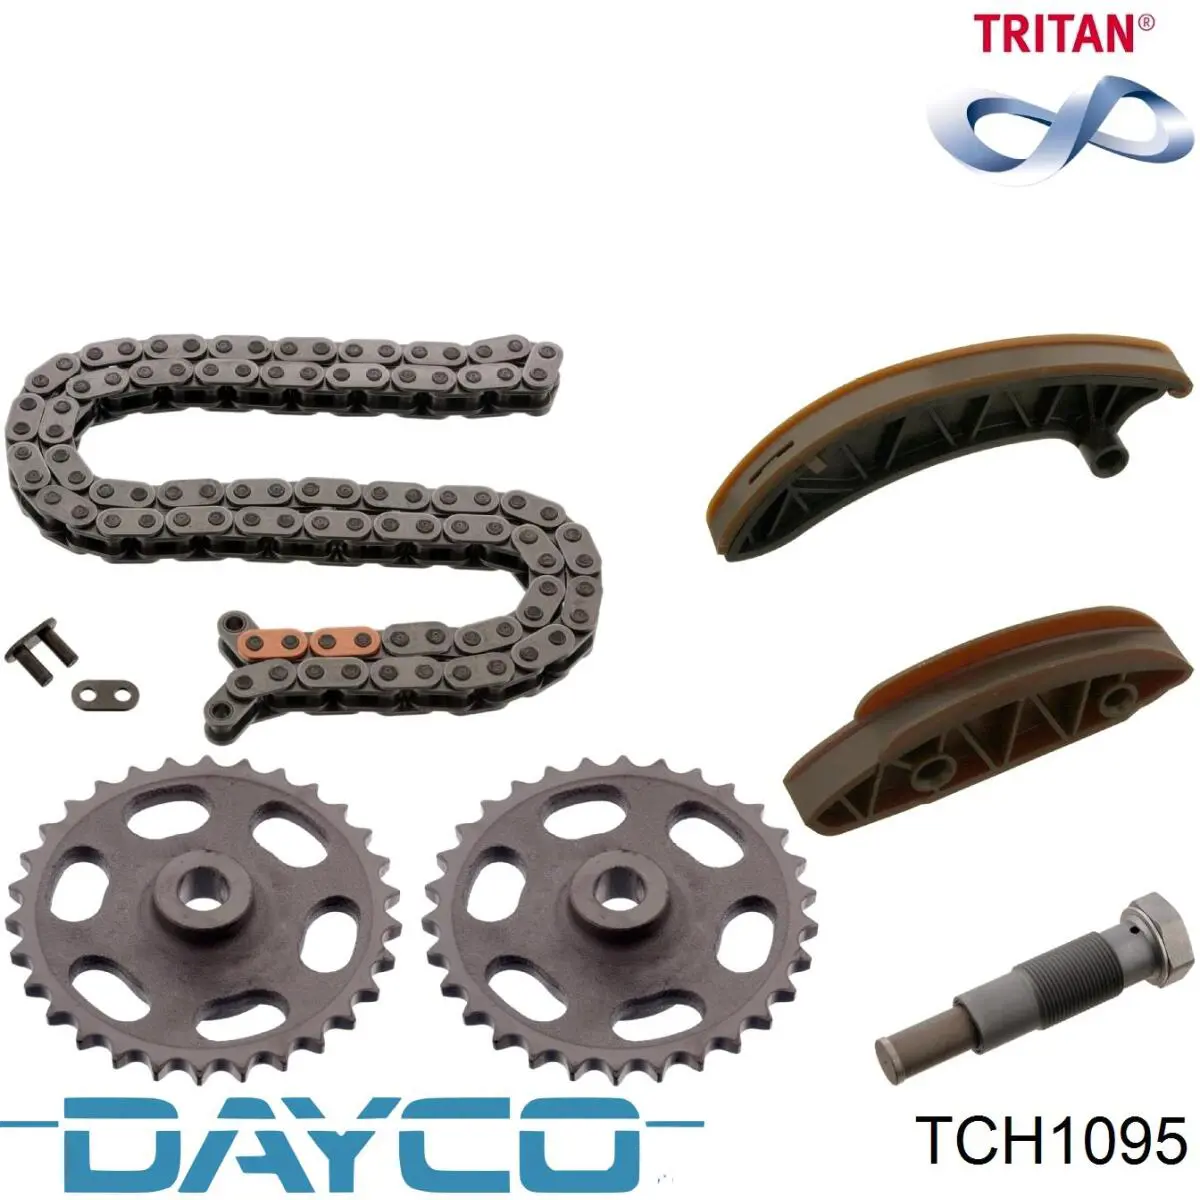 TCH1095 Dayco cadena de distribución